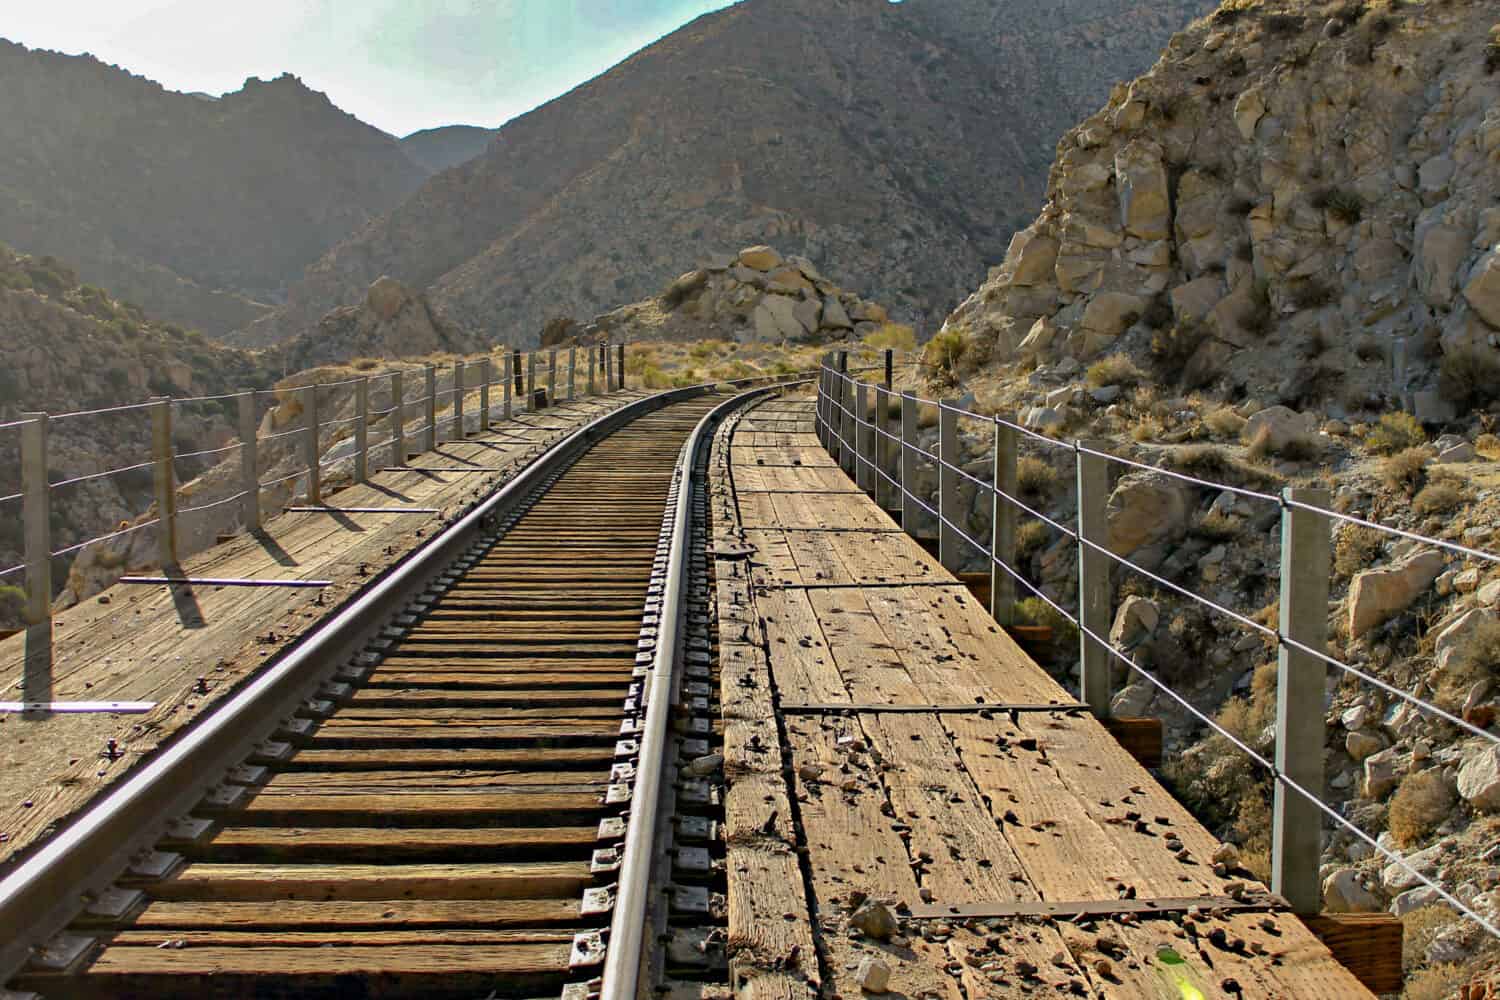 La ferrovia attraversa il canyon del deserto sul ponte a traliccio nel deserto della California lungo la linea Impossible Railroad della San Diego and Arizona Eastern Railway Company